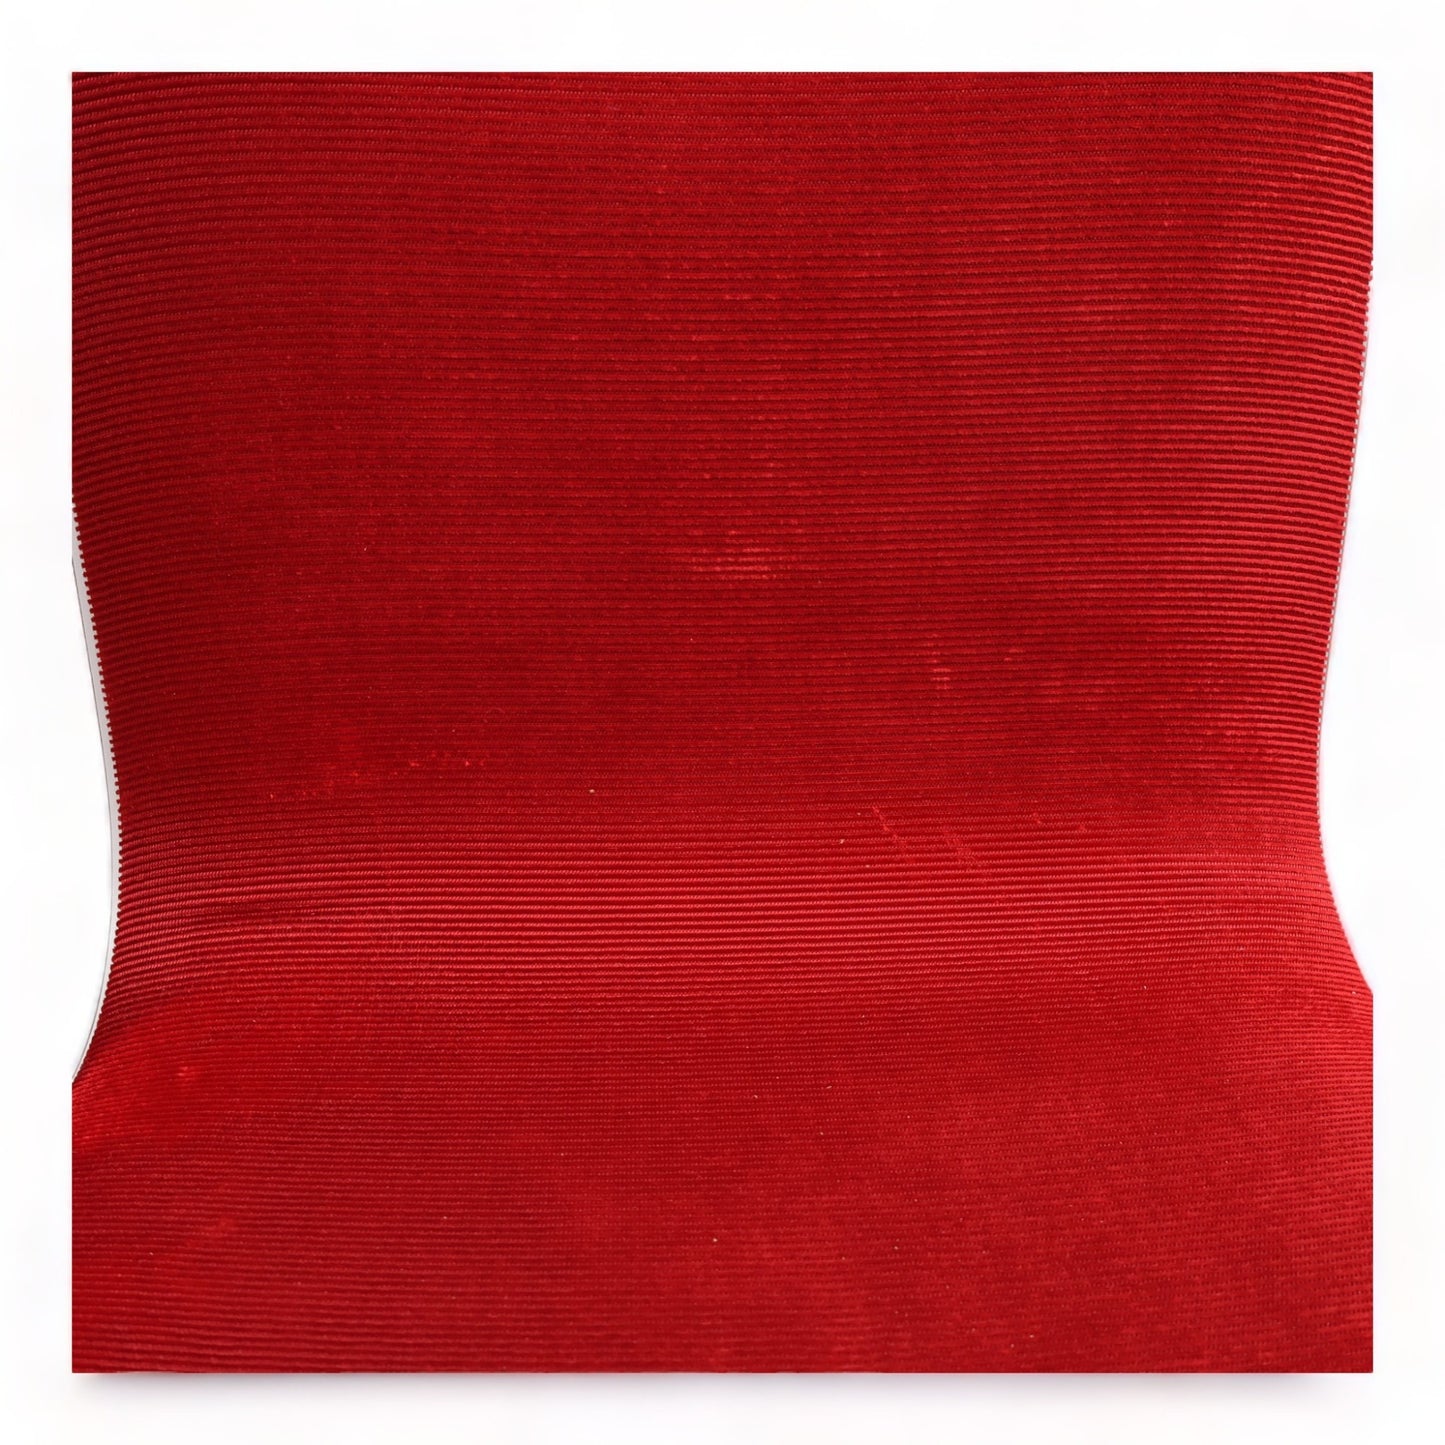 Nyrenset | Stablebare møtestoler i fargen rød